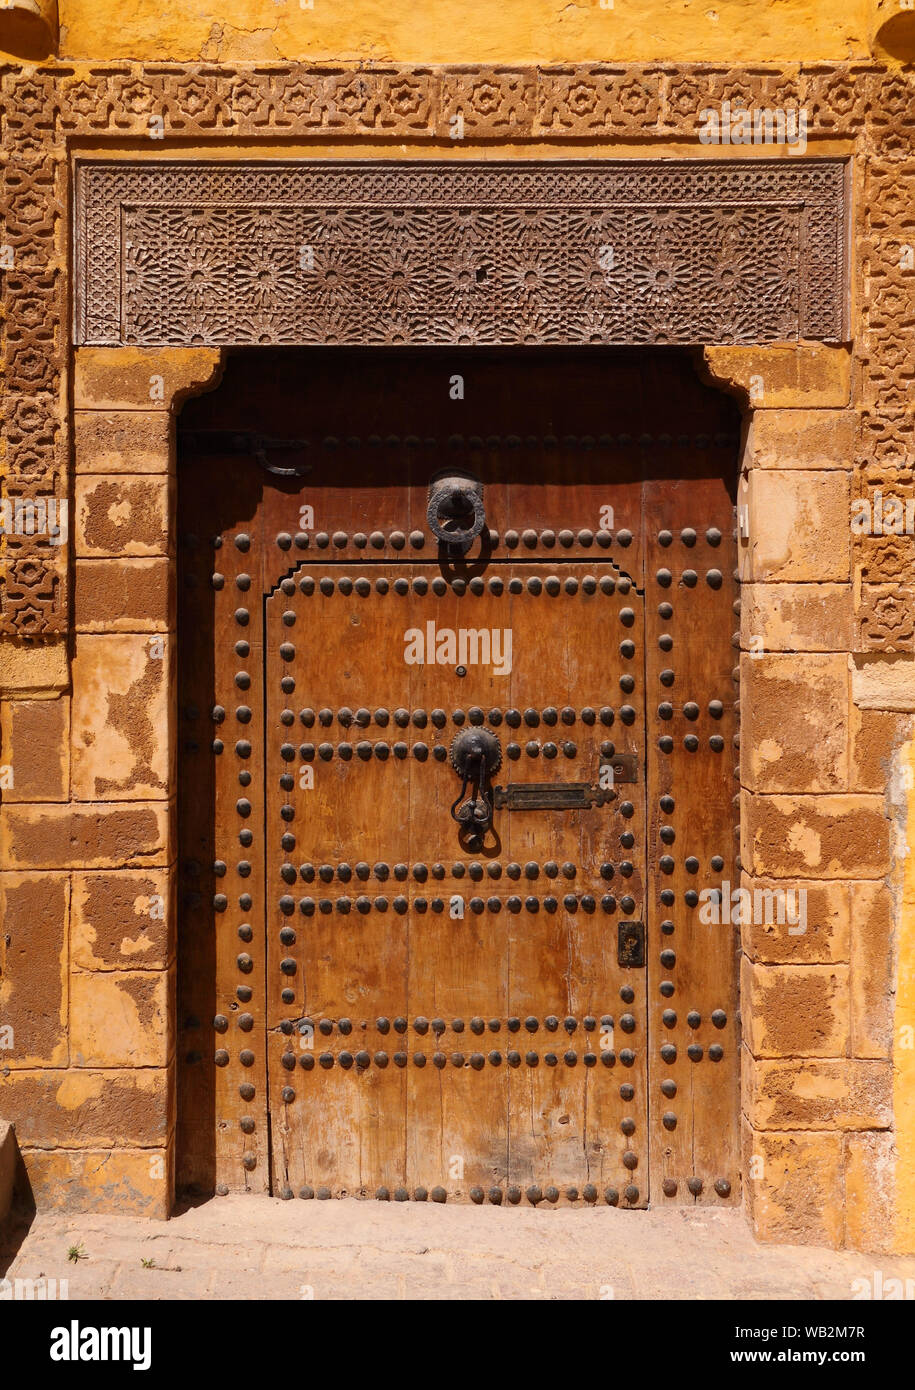 Médiéval, typique de style arabesque, finement sculptée, piqué, riad marocain porte et porte cadre, Azemmour, El Jadida, Maroc. Banque D'Images